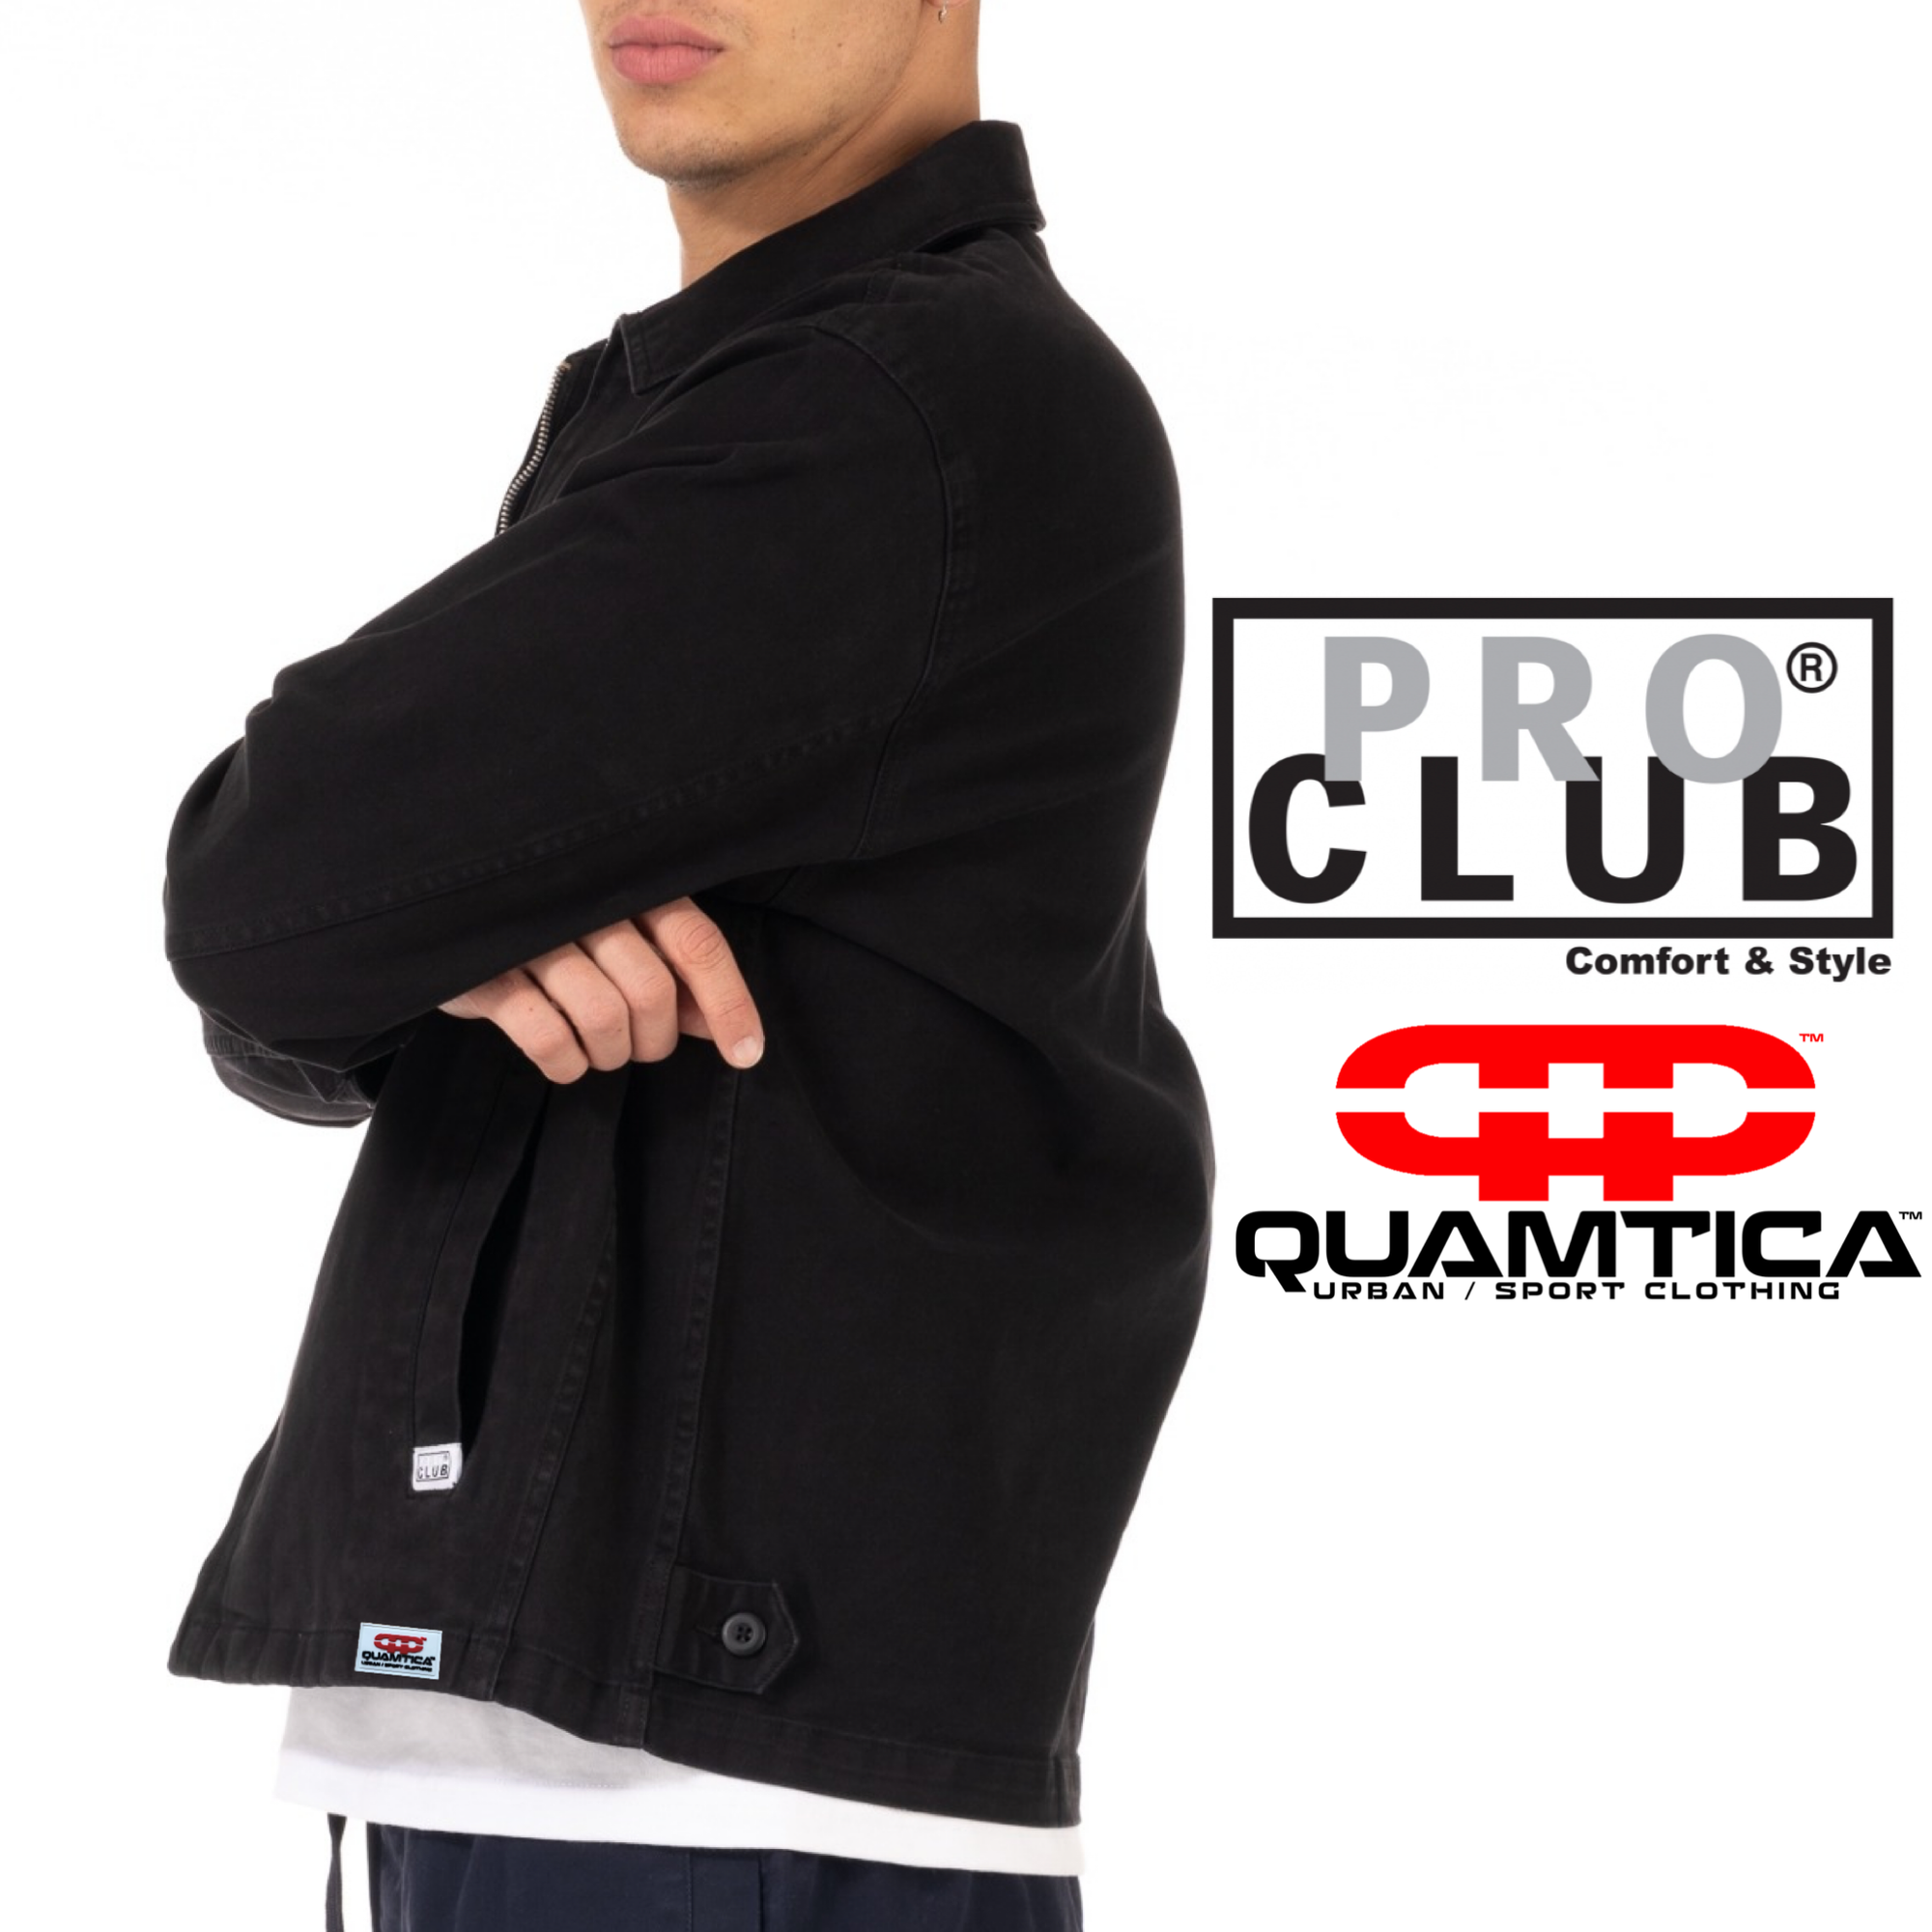 PRO CLUB QUAMTICA